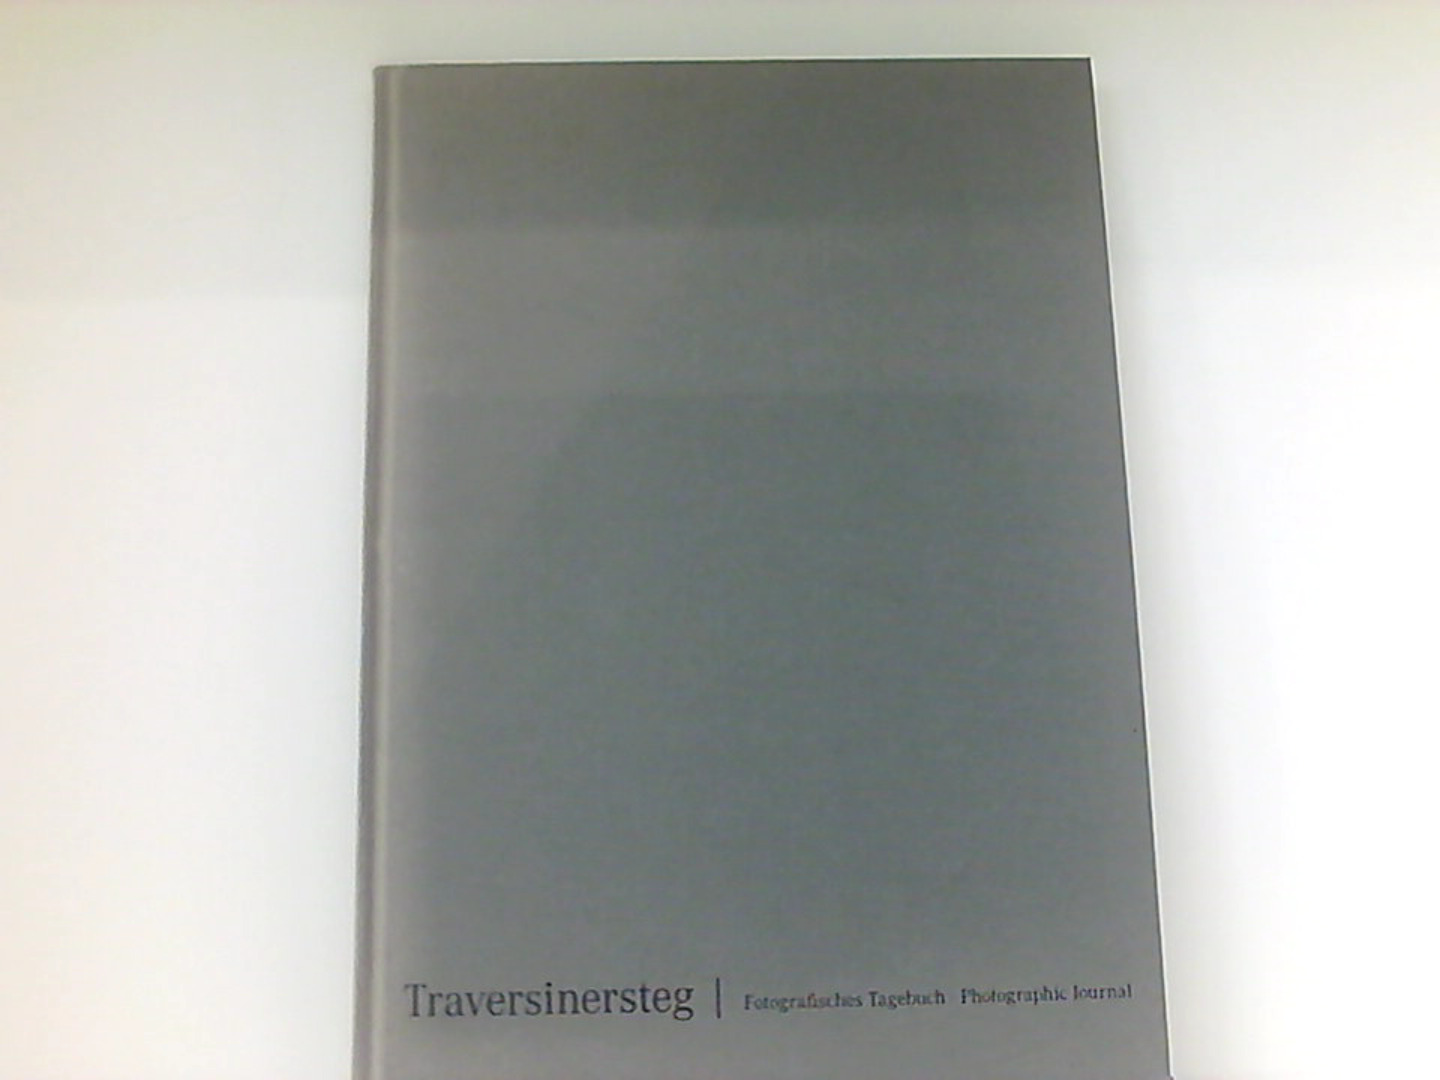 Traversinersteg: Fotografisches Tagebuch 14. April - 16. August 2005  1., - Dechau, Wilfried, Ursula Baus Rolf Sachsse  u. a.